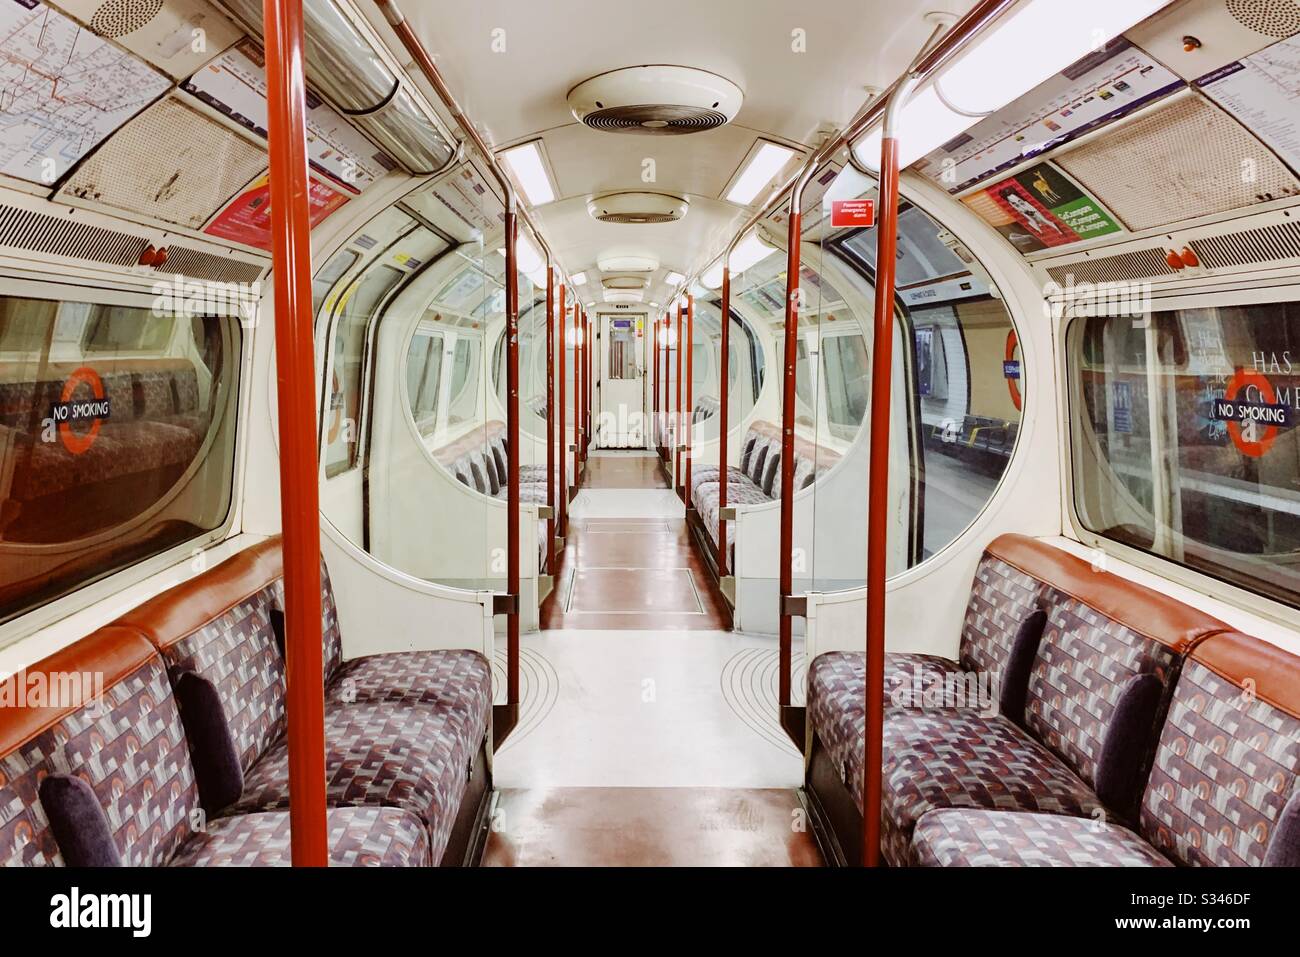 Ein eingelassener U-Bahn-Zug in London auf Höhe der Coronavirus/Covid19-Pandemie. Stockfoto